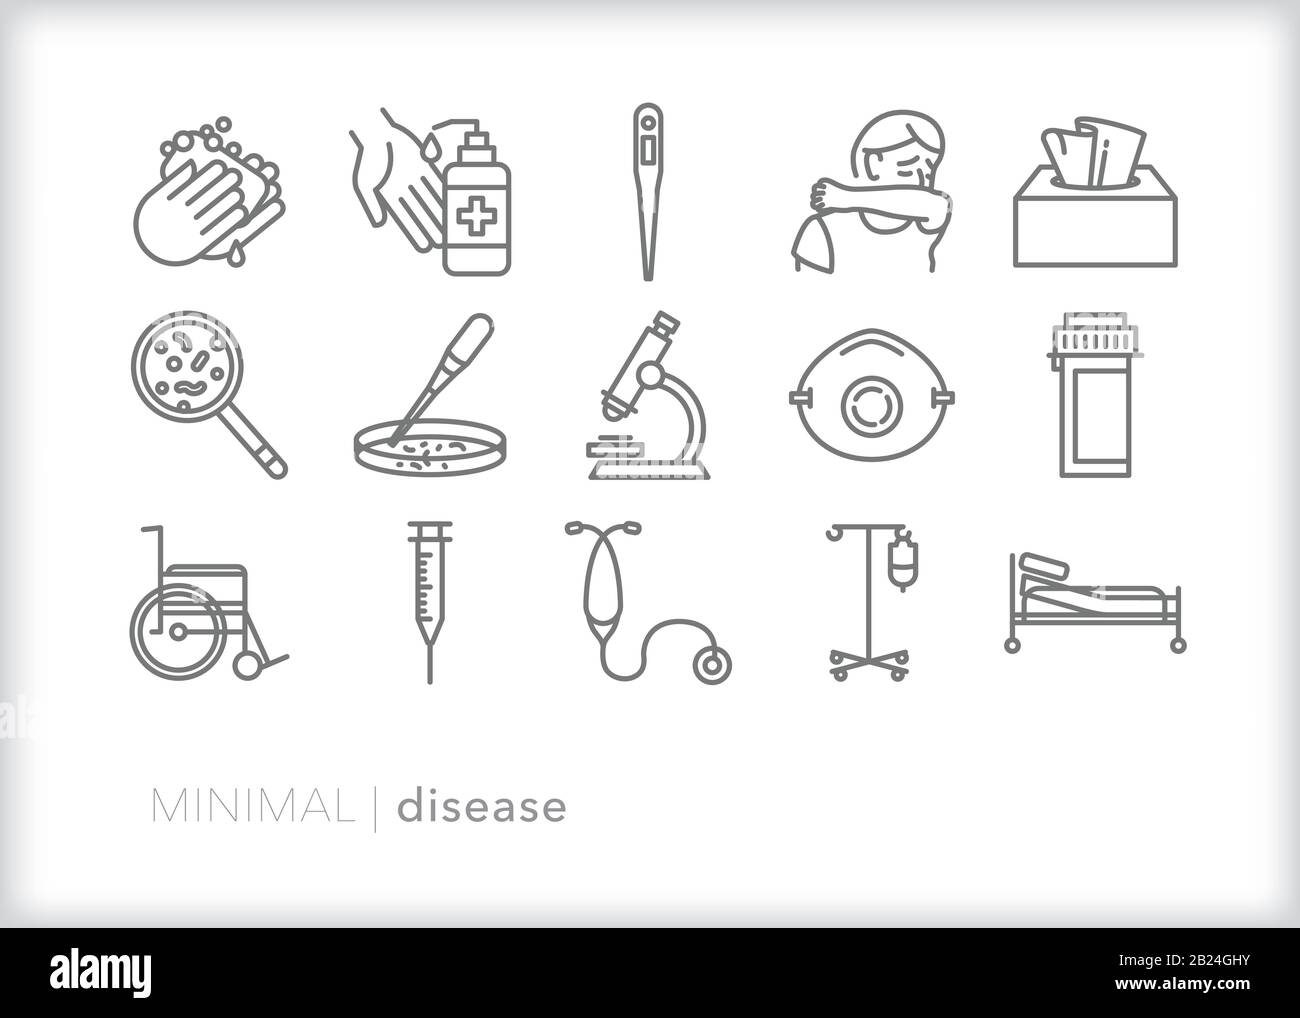 Serie di 15 icone della linea di malattie dei sintomi del raffreddore e dell'influenza, tra cui tosse e starnuti, nonché ricerca per sviluppare vaccini per il contagio o l'epidemia Illustrazione Vettoriale